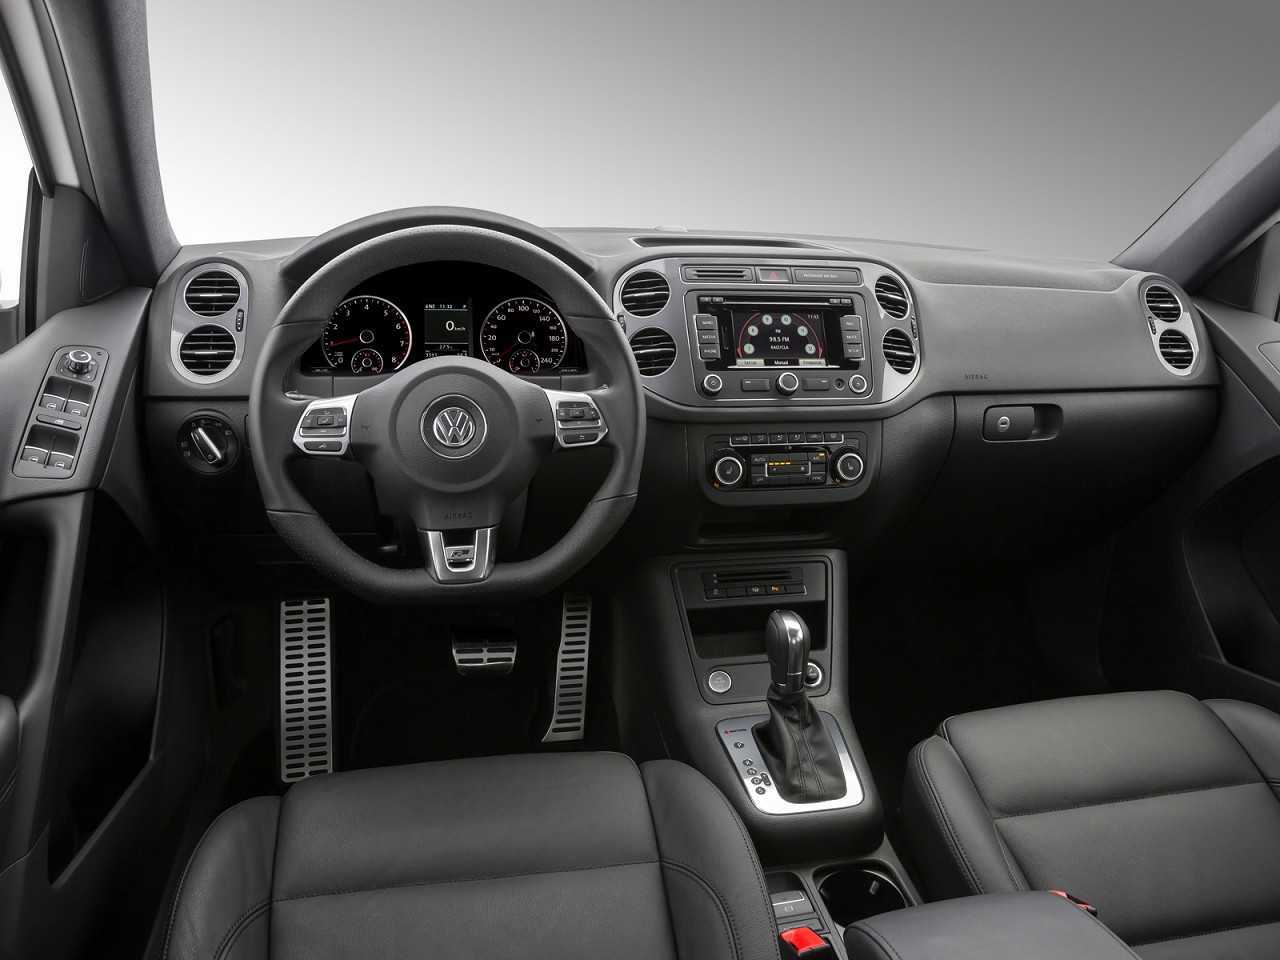 VolkswagenTiguan 2017 - painel